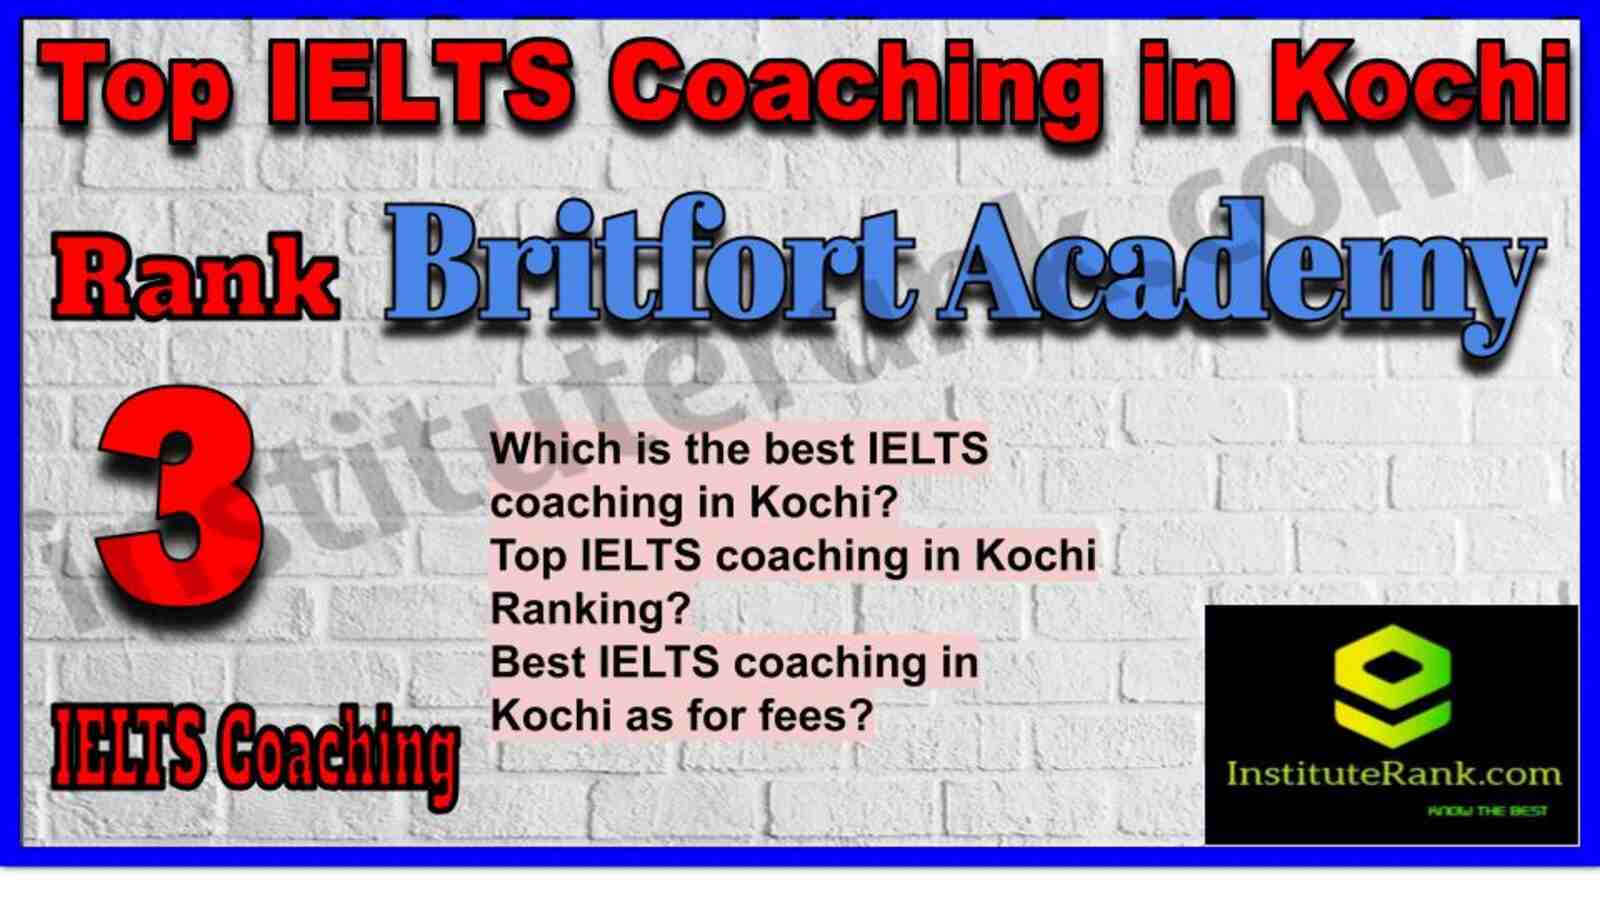 Rank 3. Britfort Academy | Top IELTS Coaching in Kochi